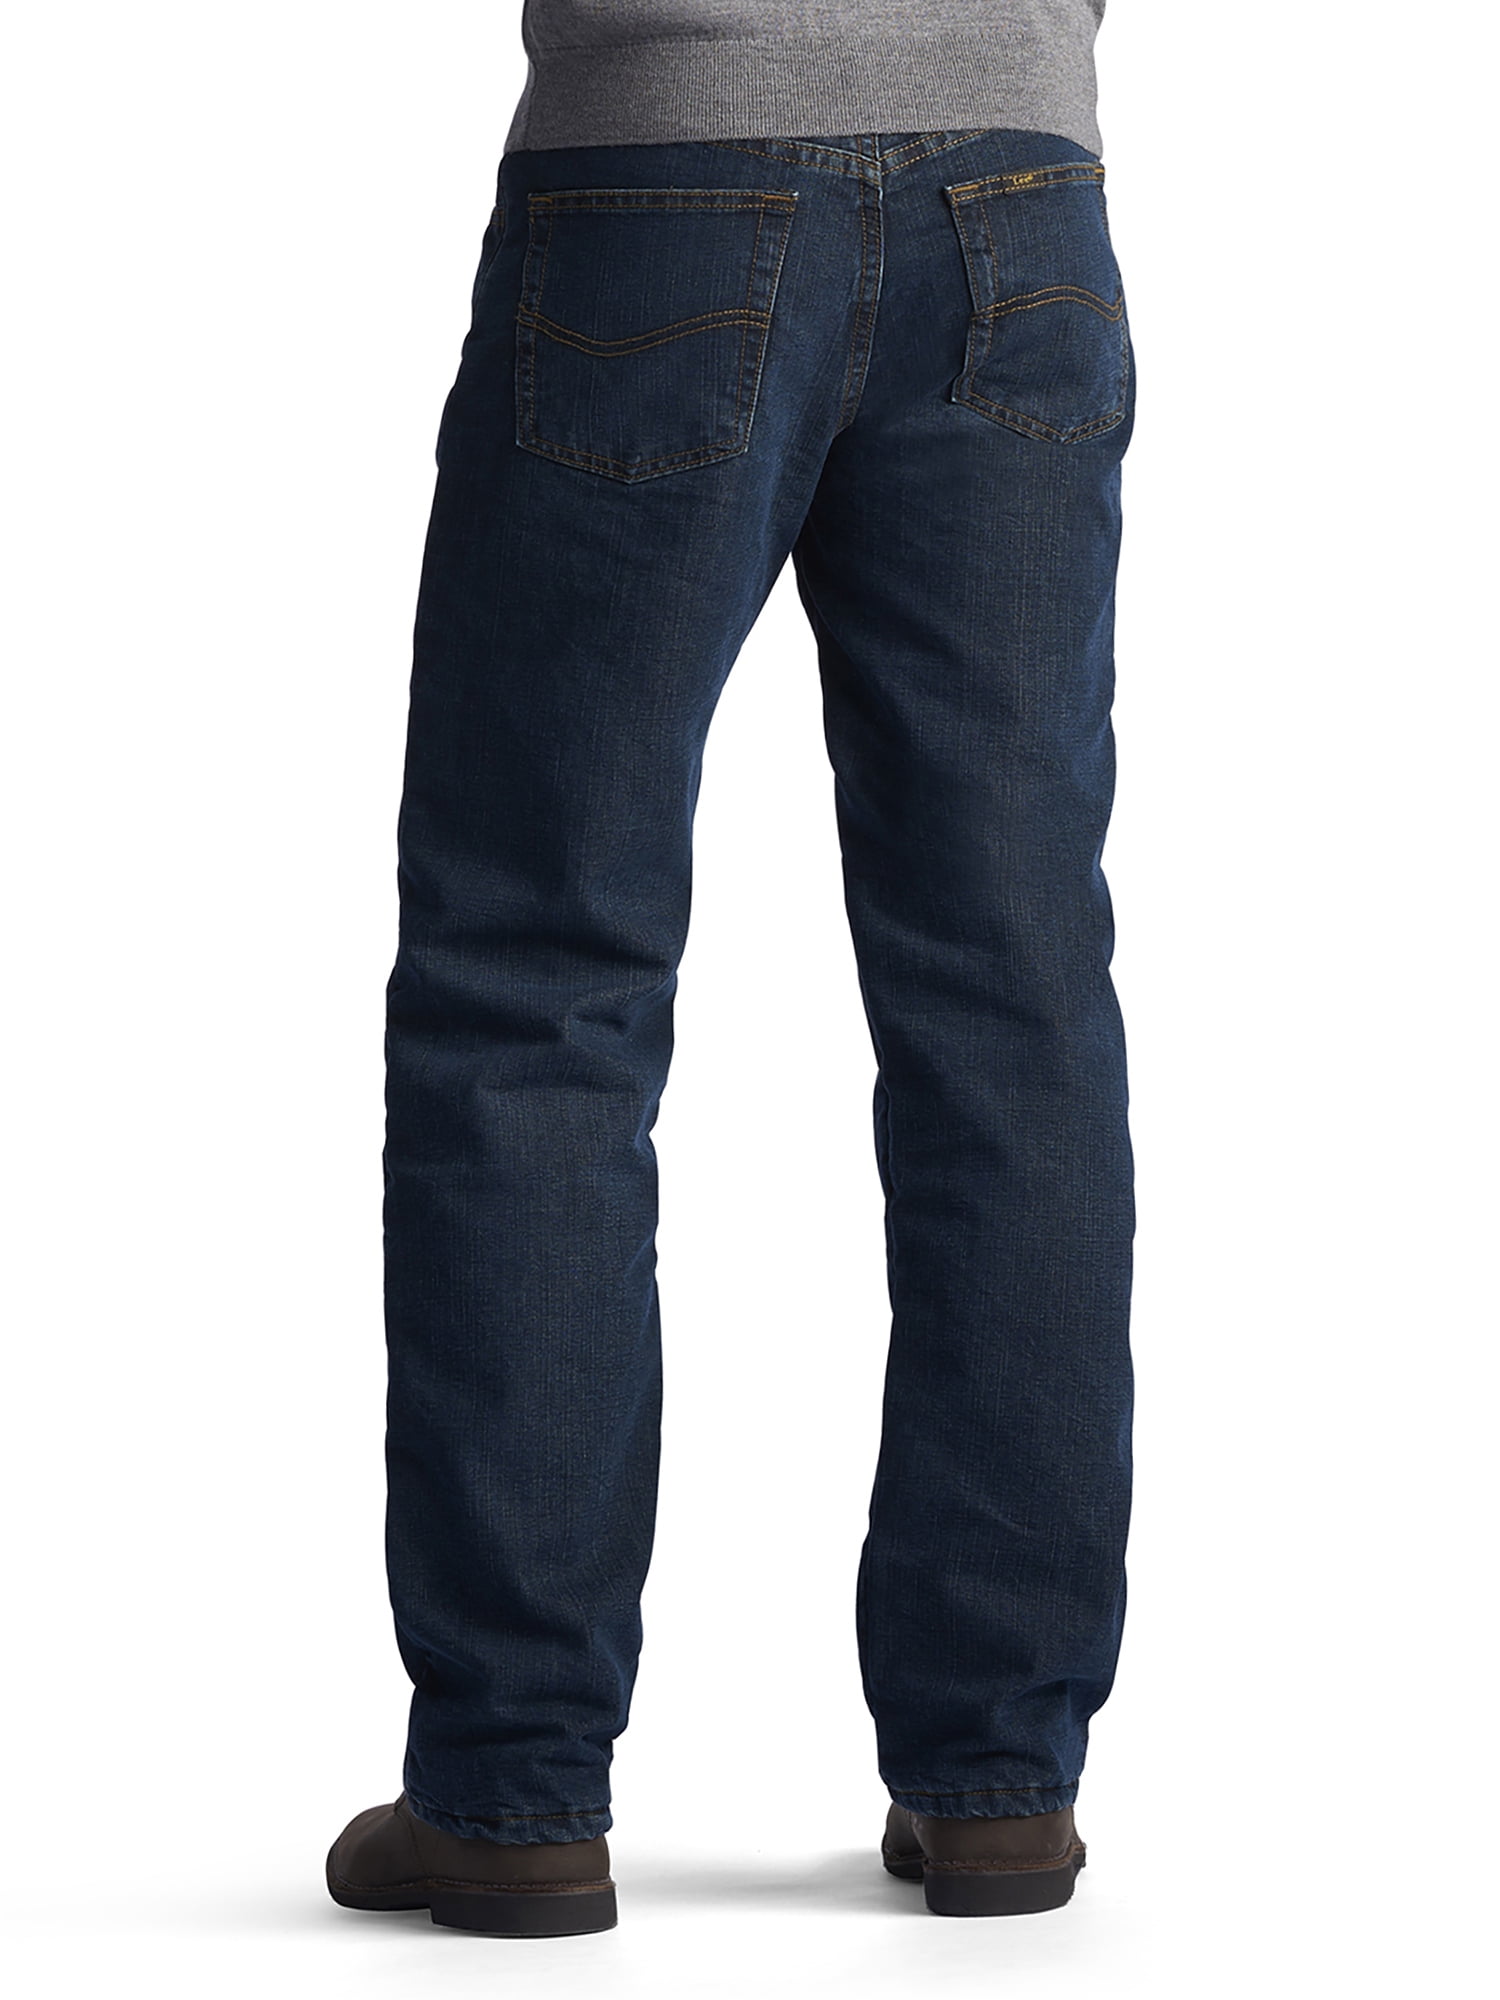 lee men's fleece lined jeans